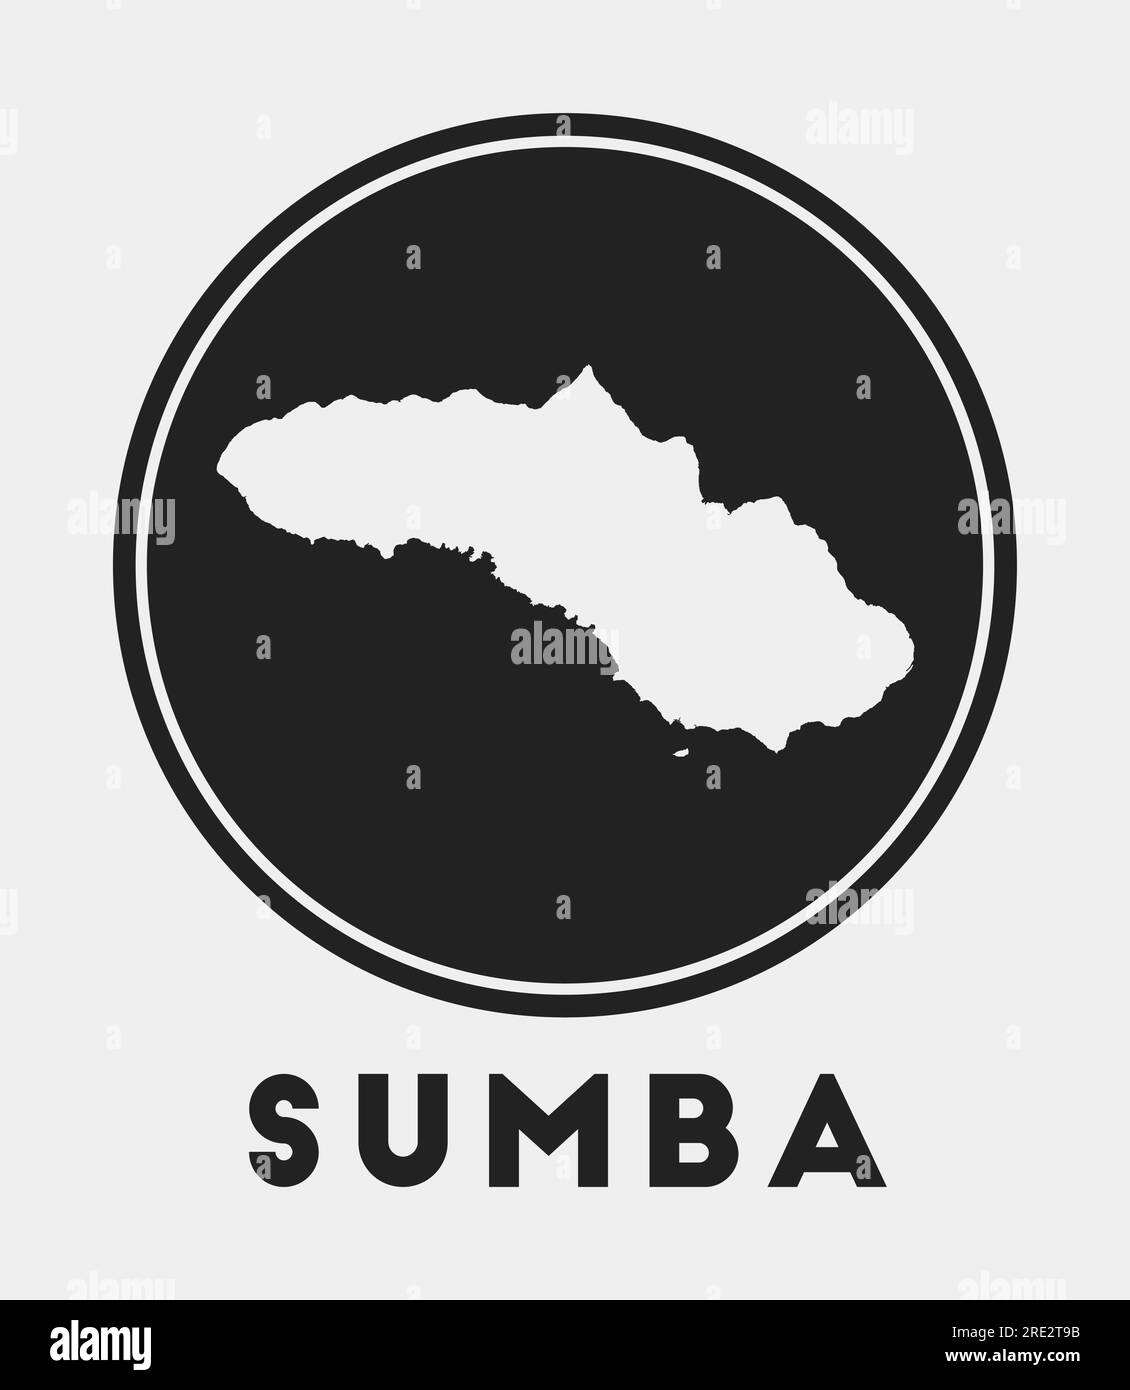 Sumba icon. Round logo with island map and title. Stylish Sumba badge ...